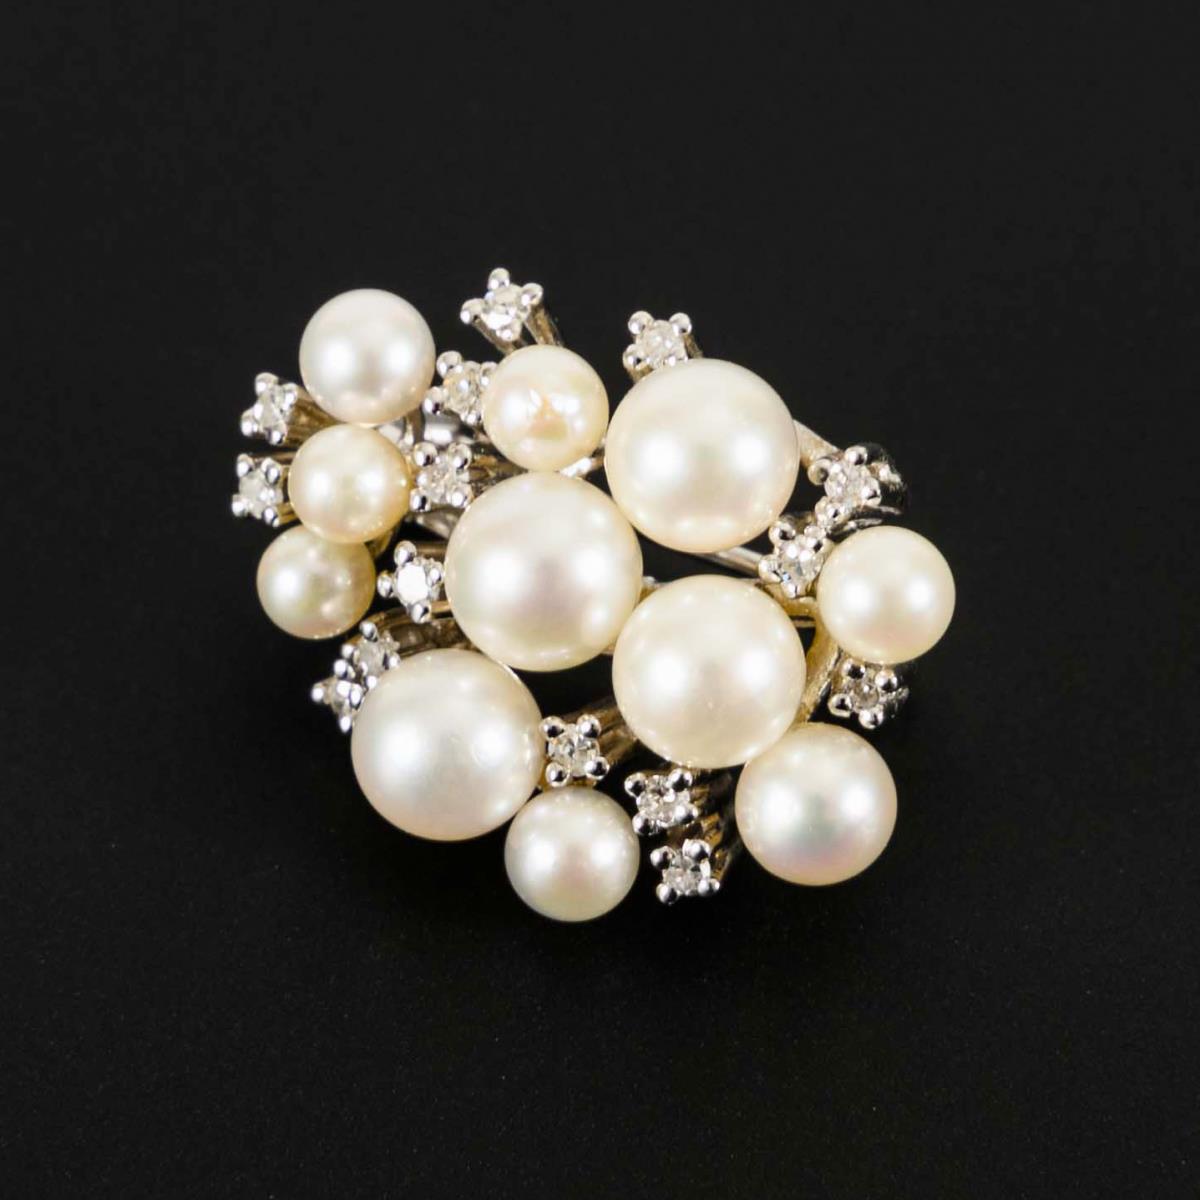 Perlenkettenverkürzer mit Akoyazuchtperlen und Diamanten.